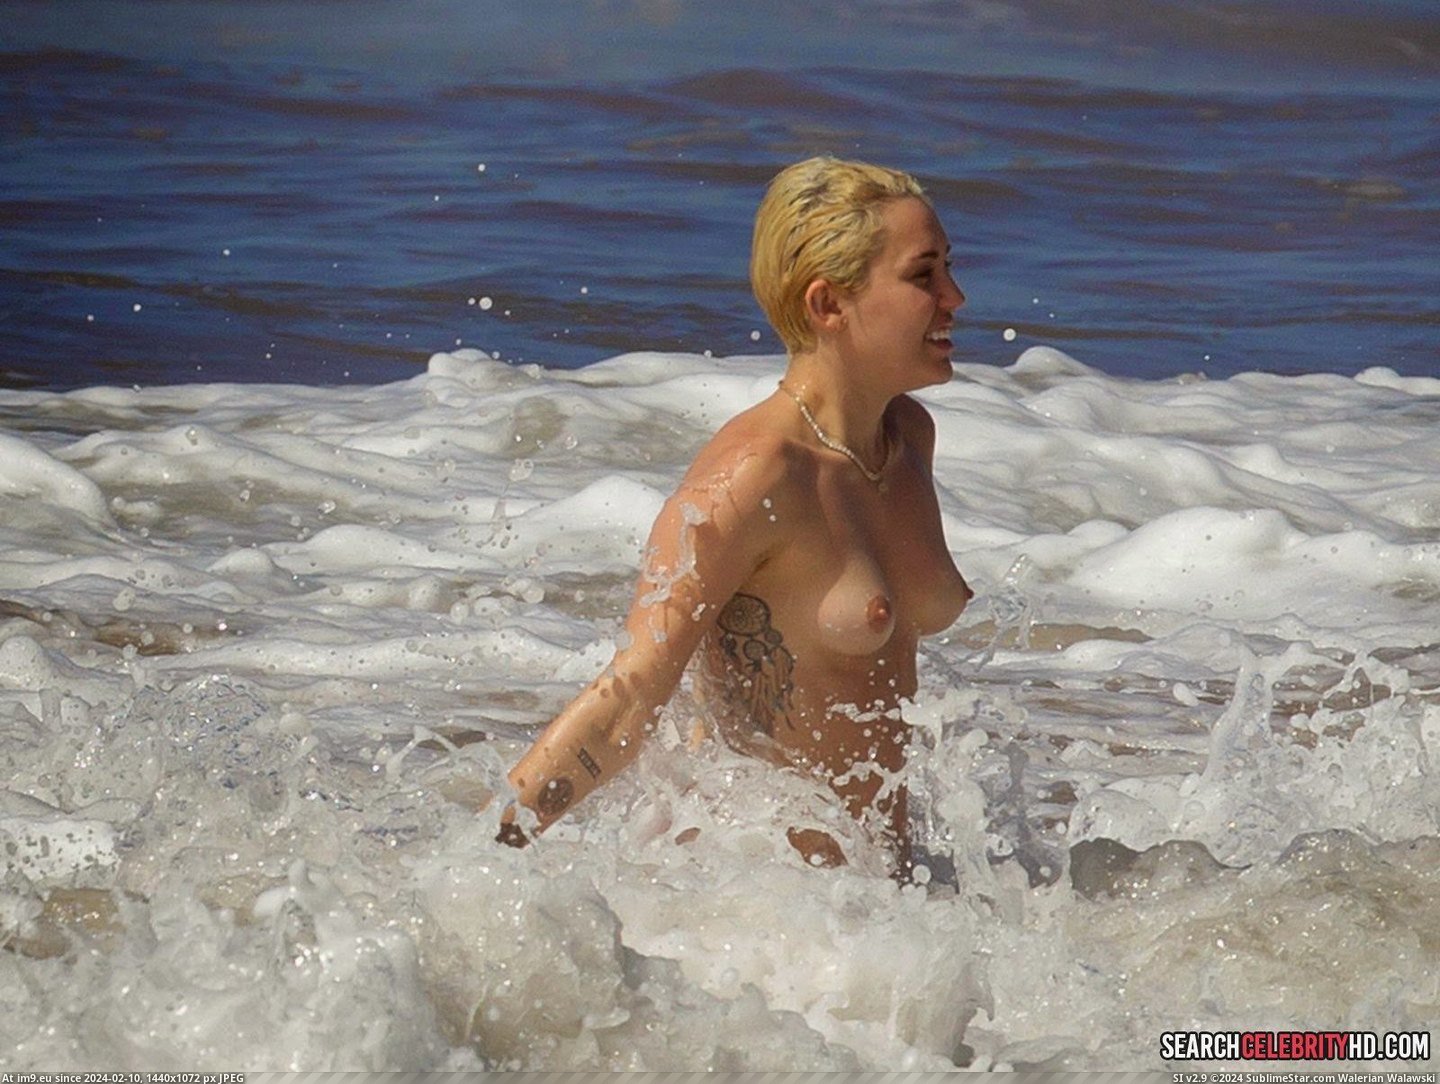 Miley Cyrus Topless Bikini Candid Photos In Hawaii (19) (in Miley Cyrus Topless Bikini Candid Photos In Hawaii)